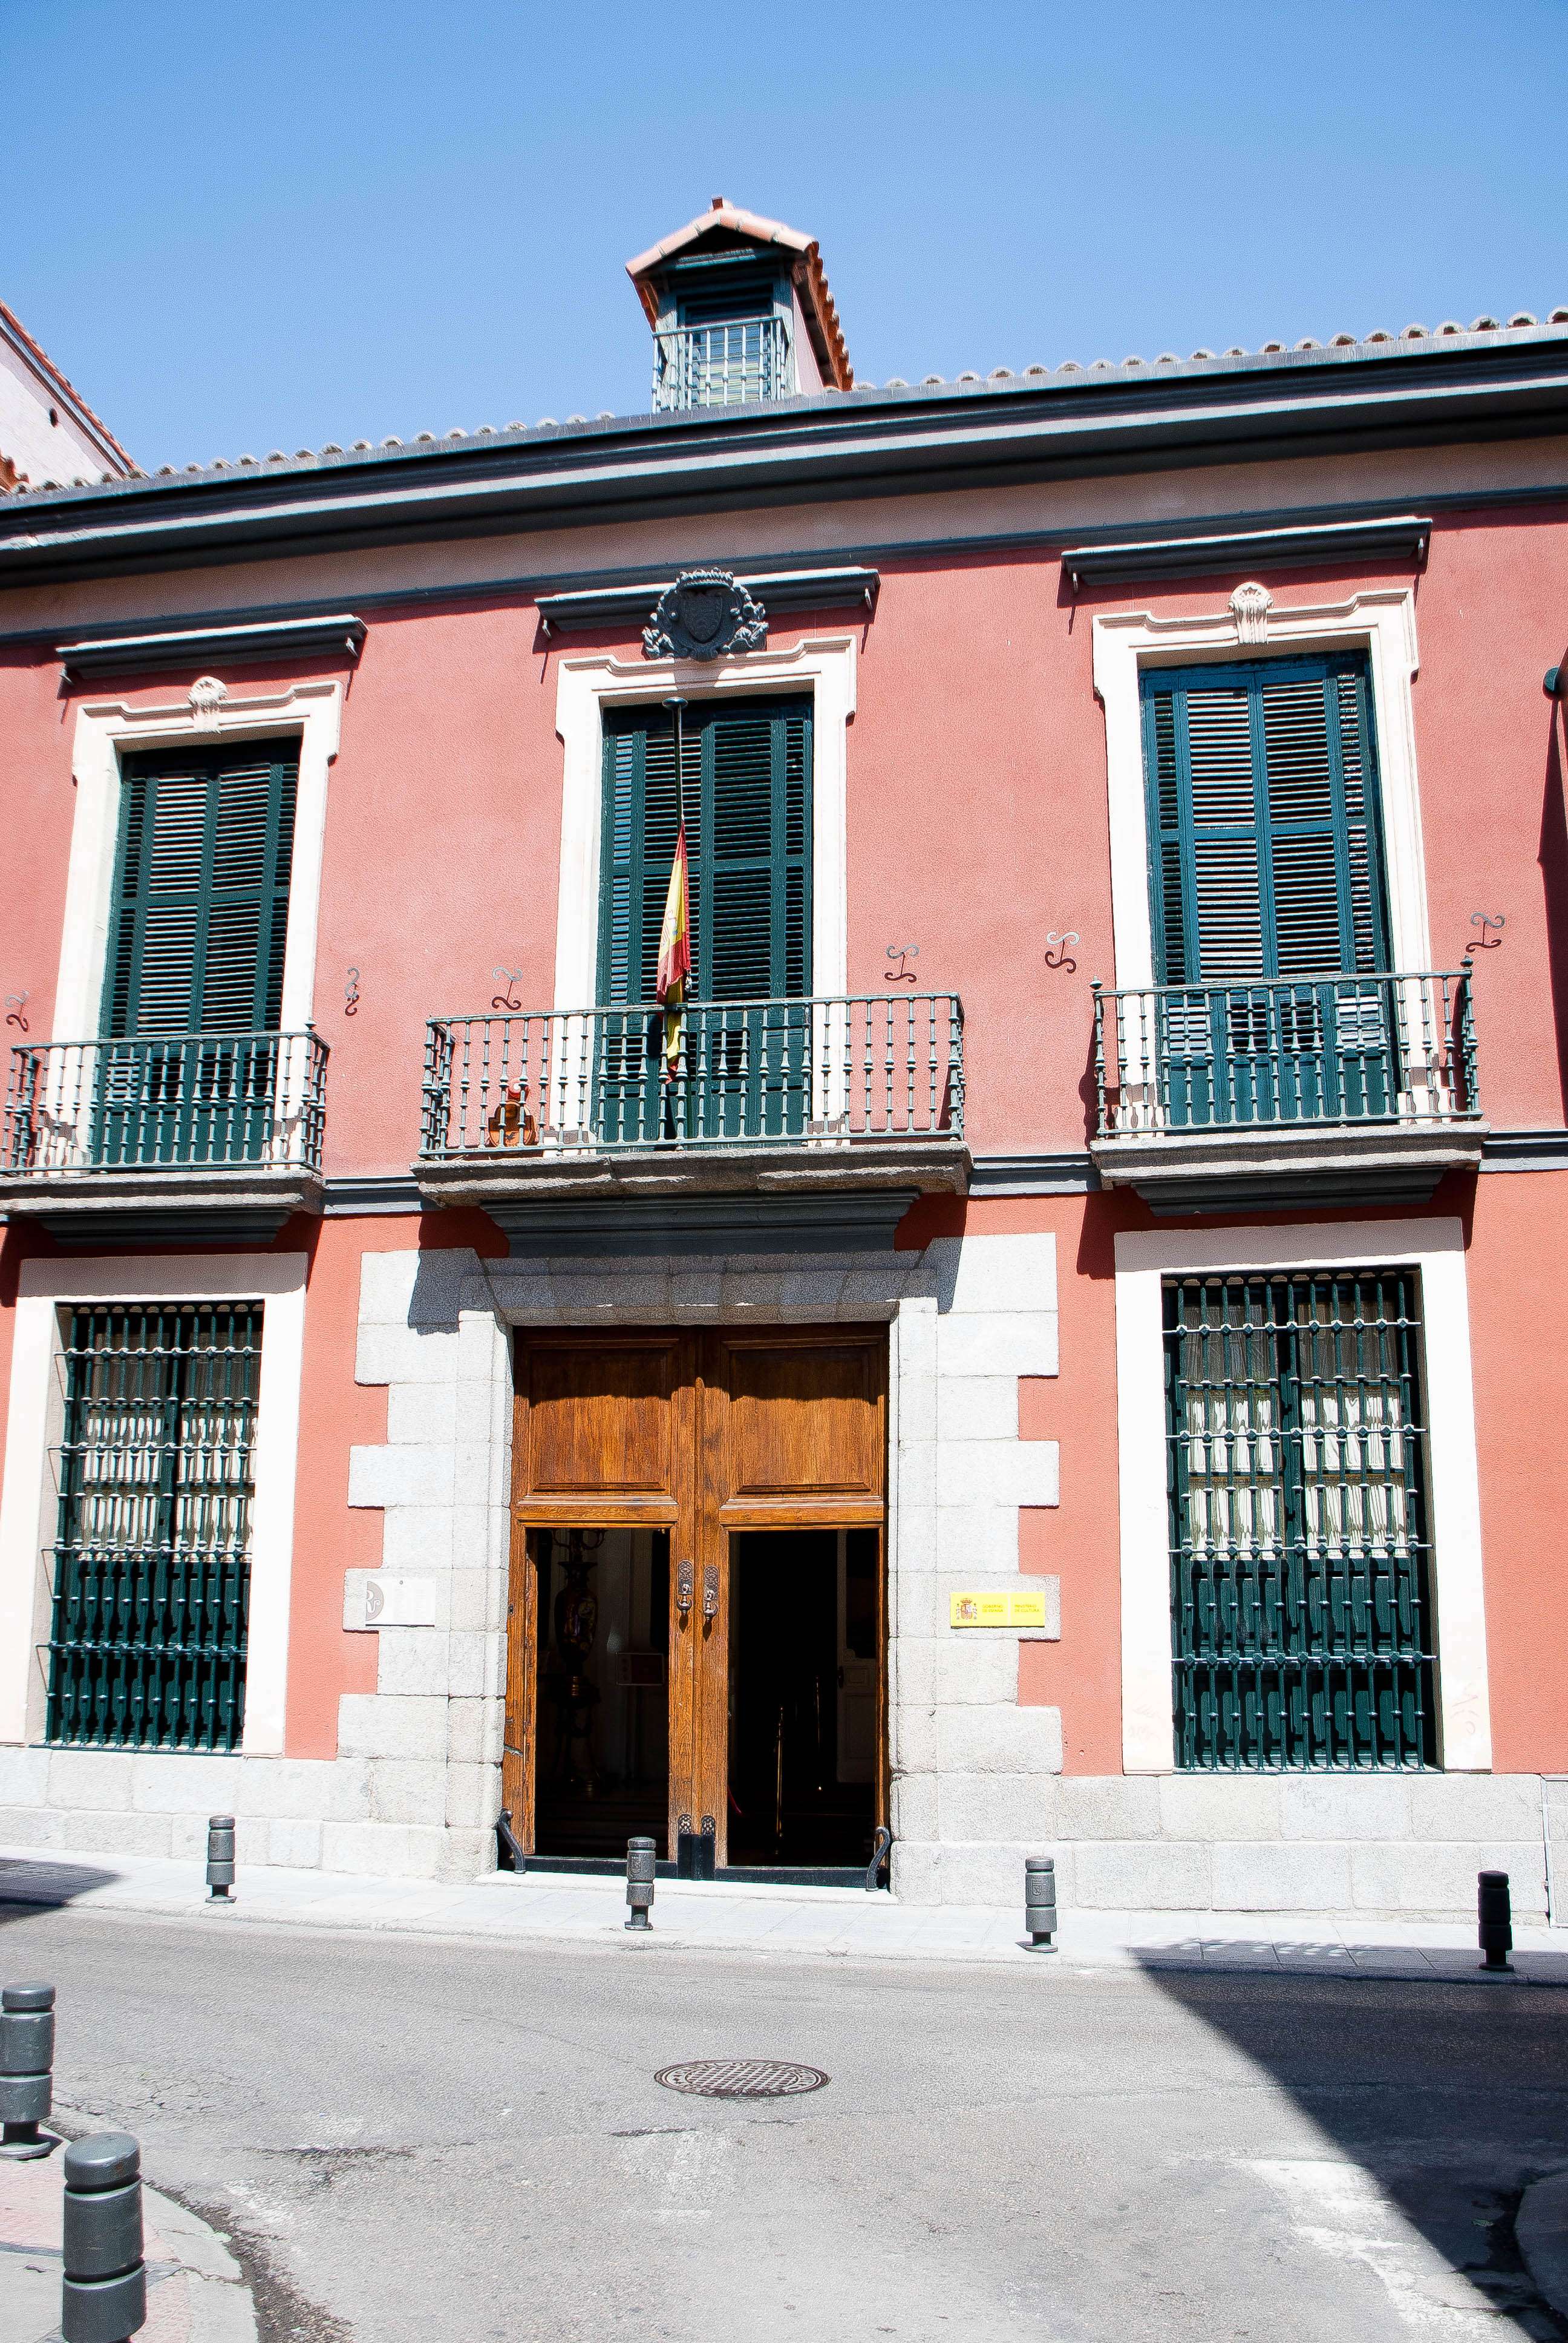 El Madrid olvidado - Blogs de España - El museo del romanticismo (2)